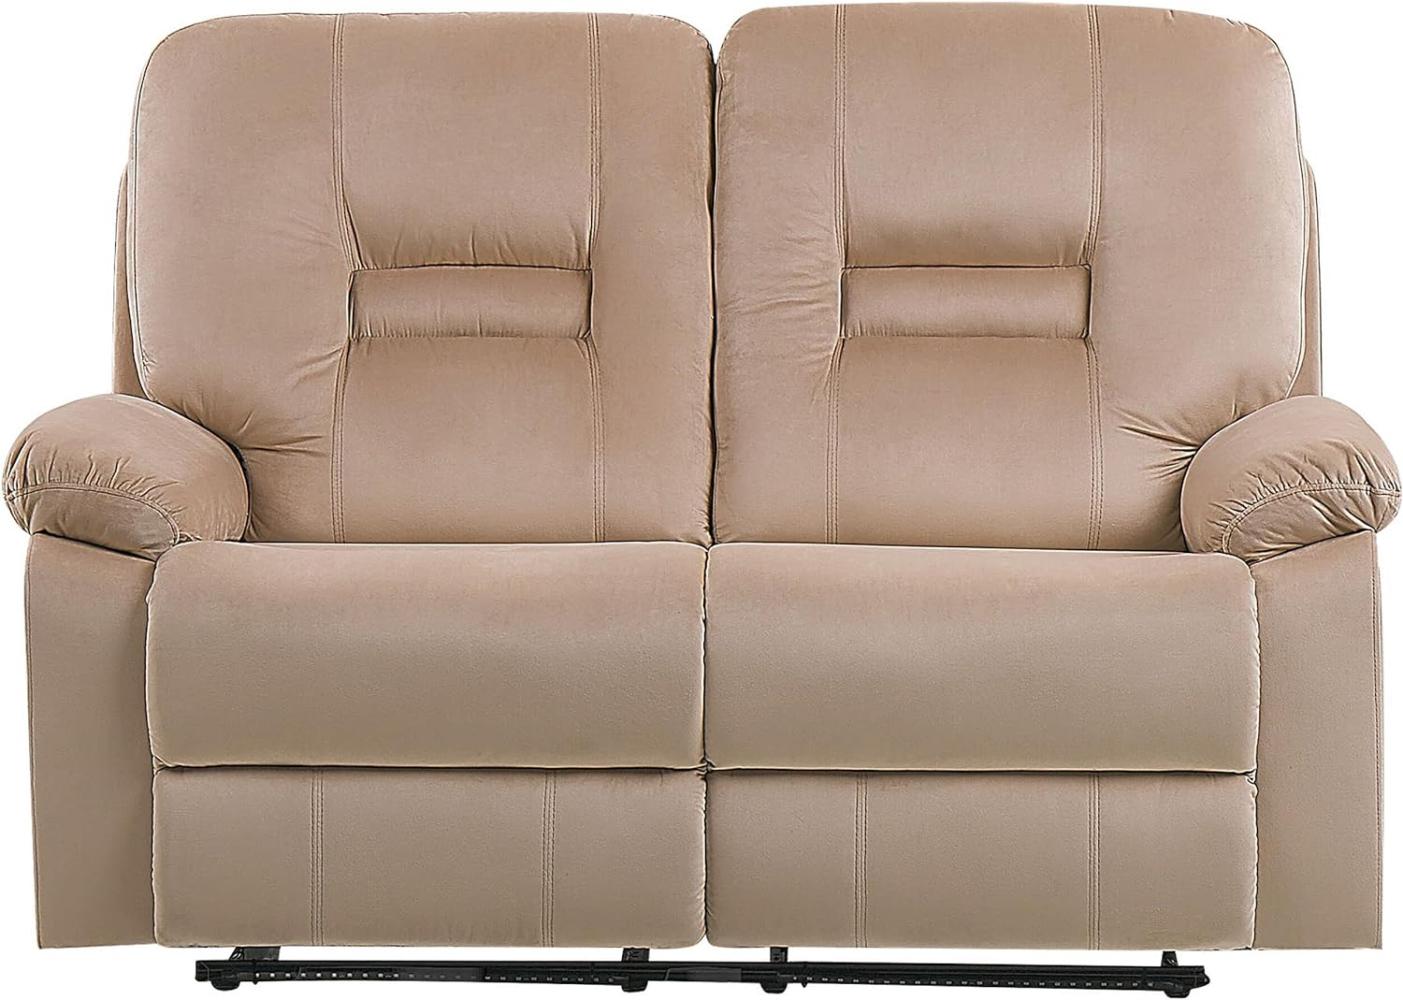 2-Sitzer Sofa Samtstoff beige LED-Beleuchtung USB-Port elektrisch verstellbar BERGEN Bild 1